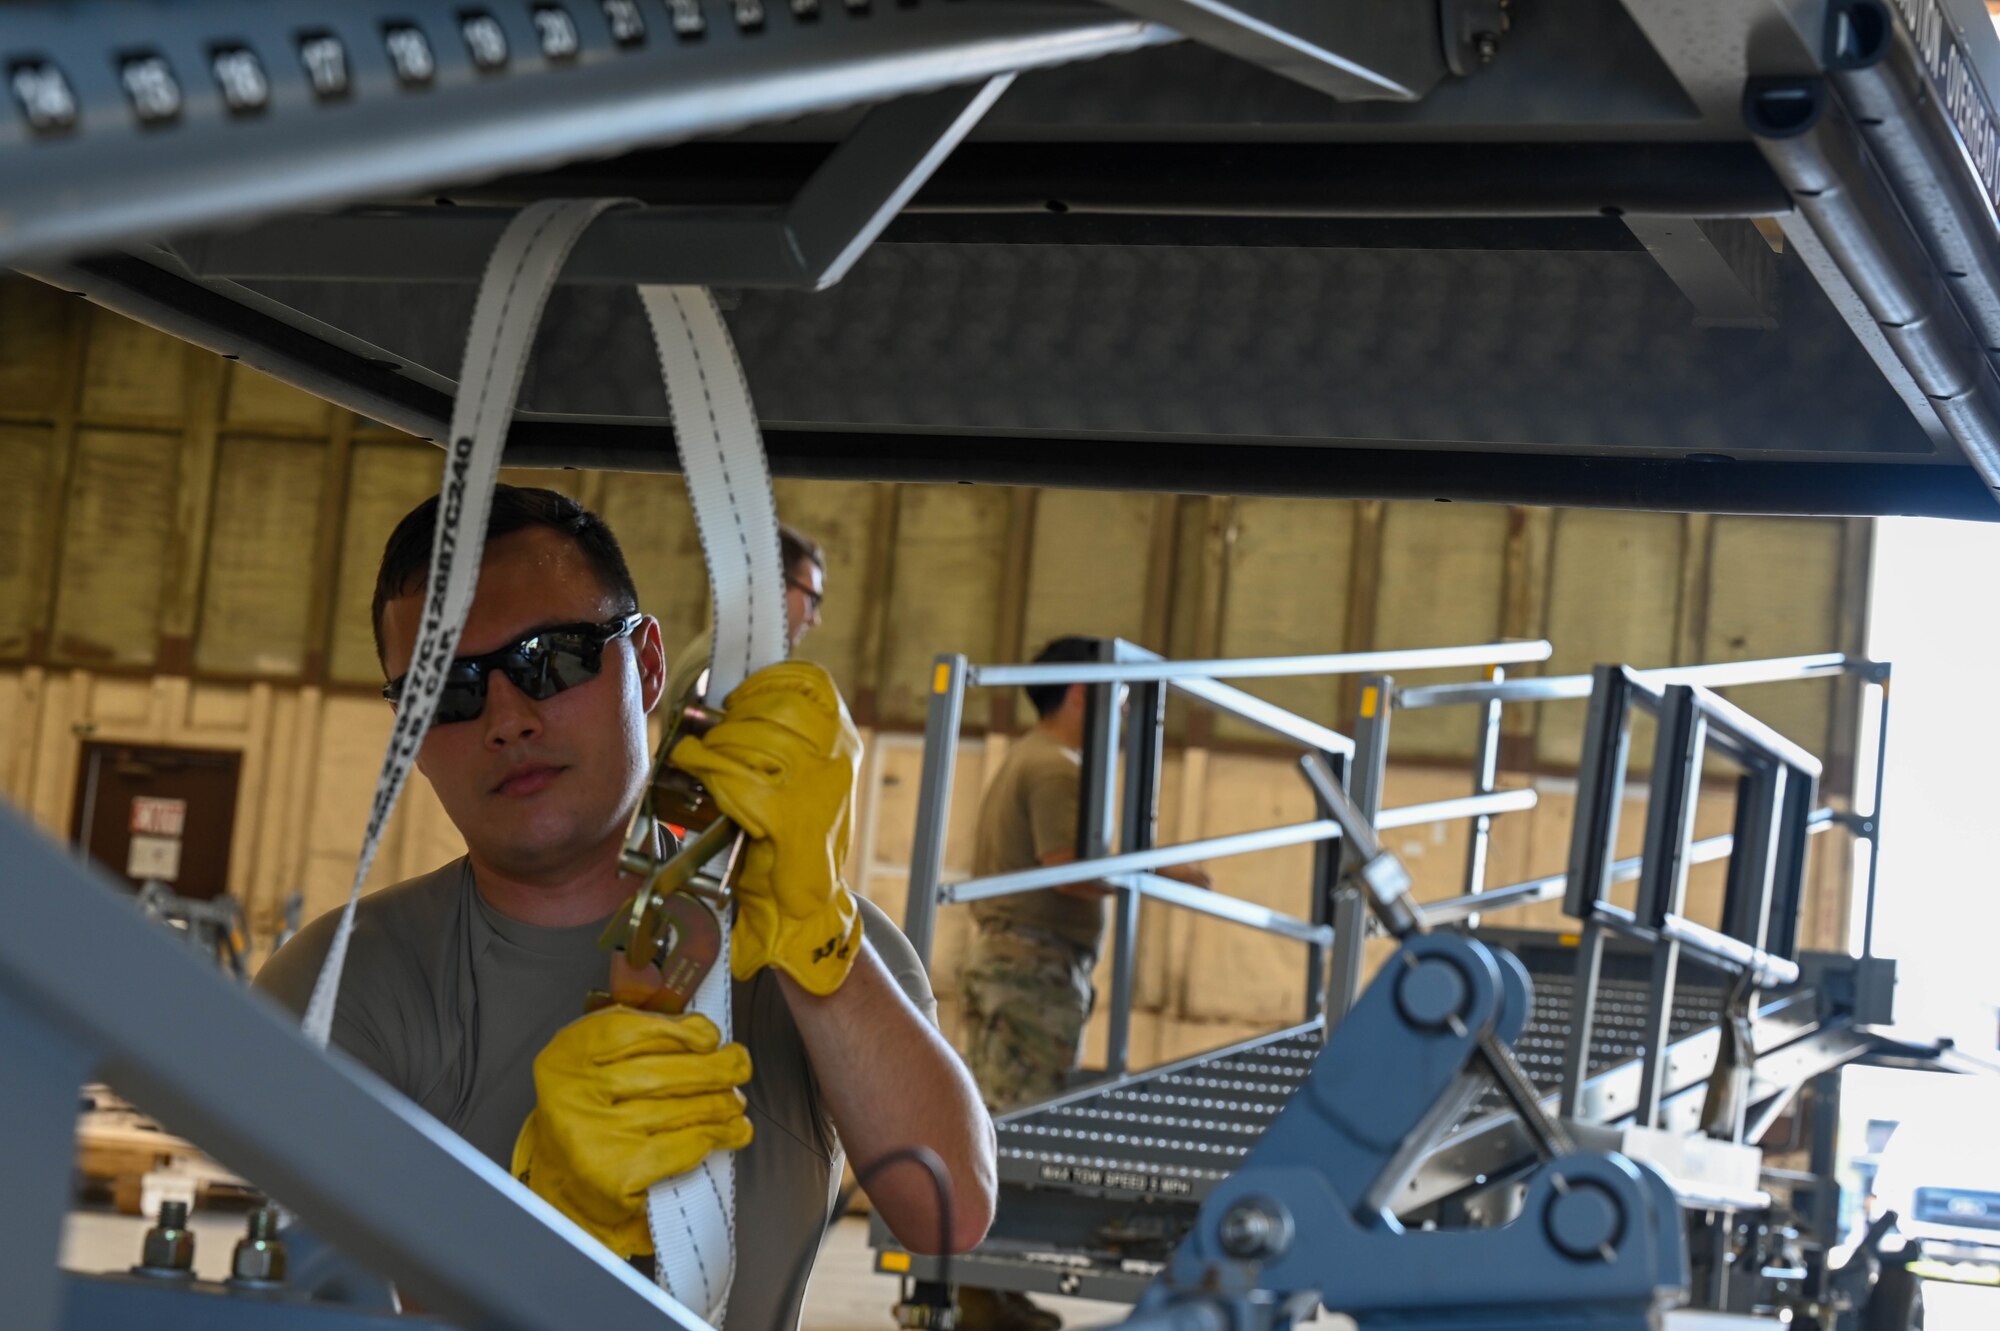 Airman preparing a B1 maintenance platform using straps while wearing yellow gloves.